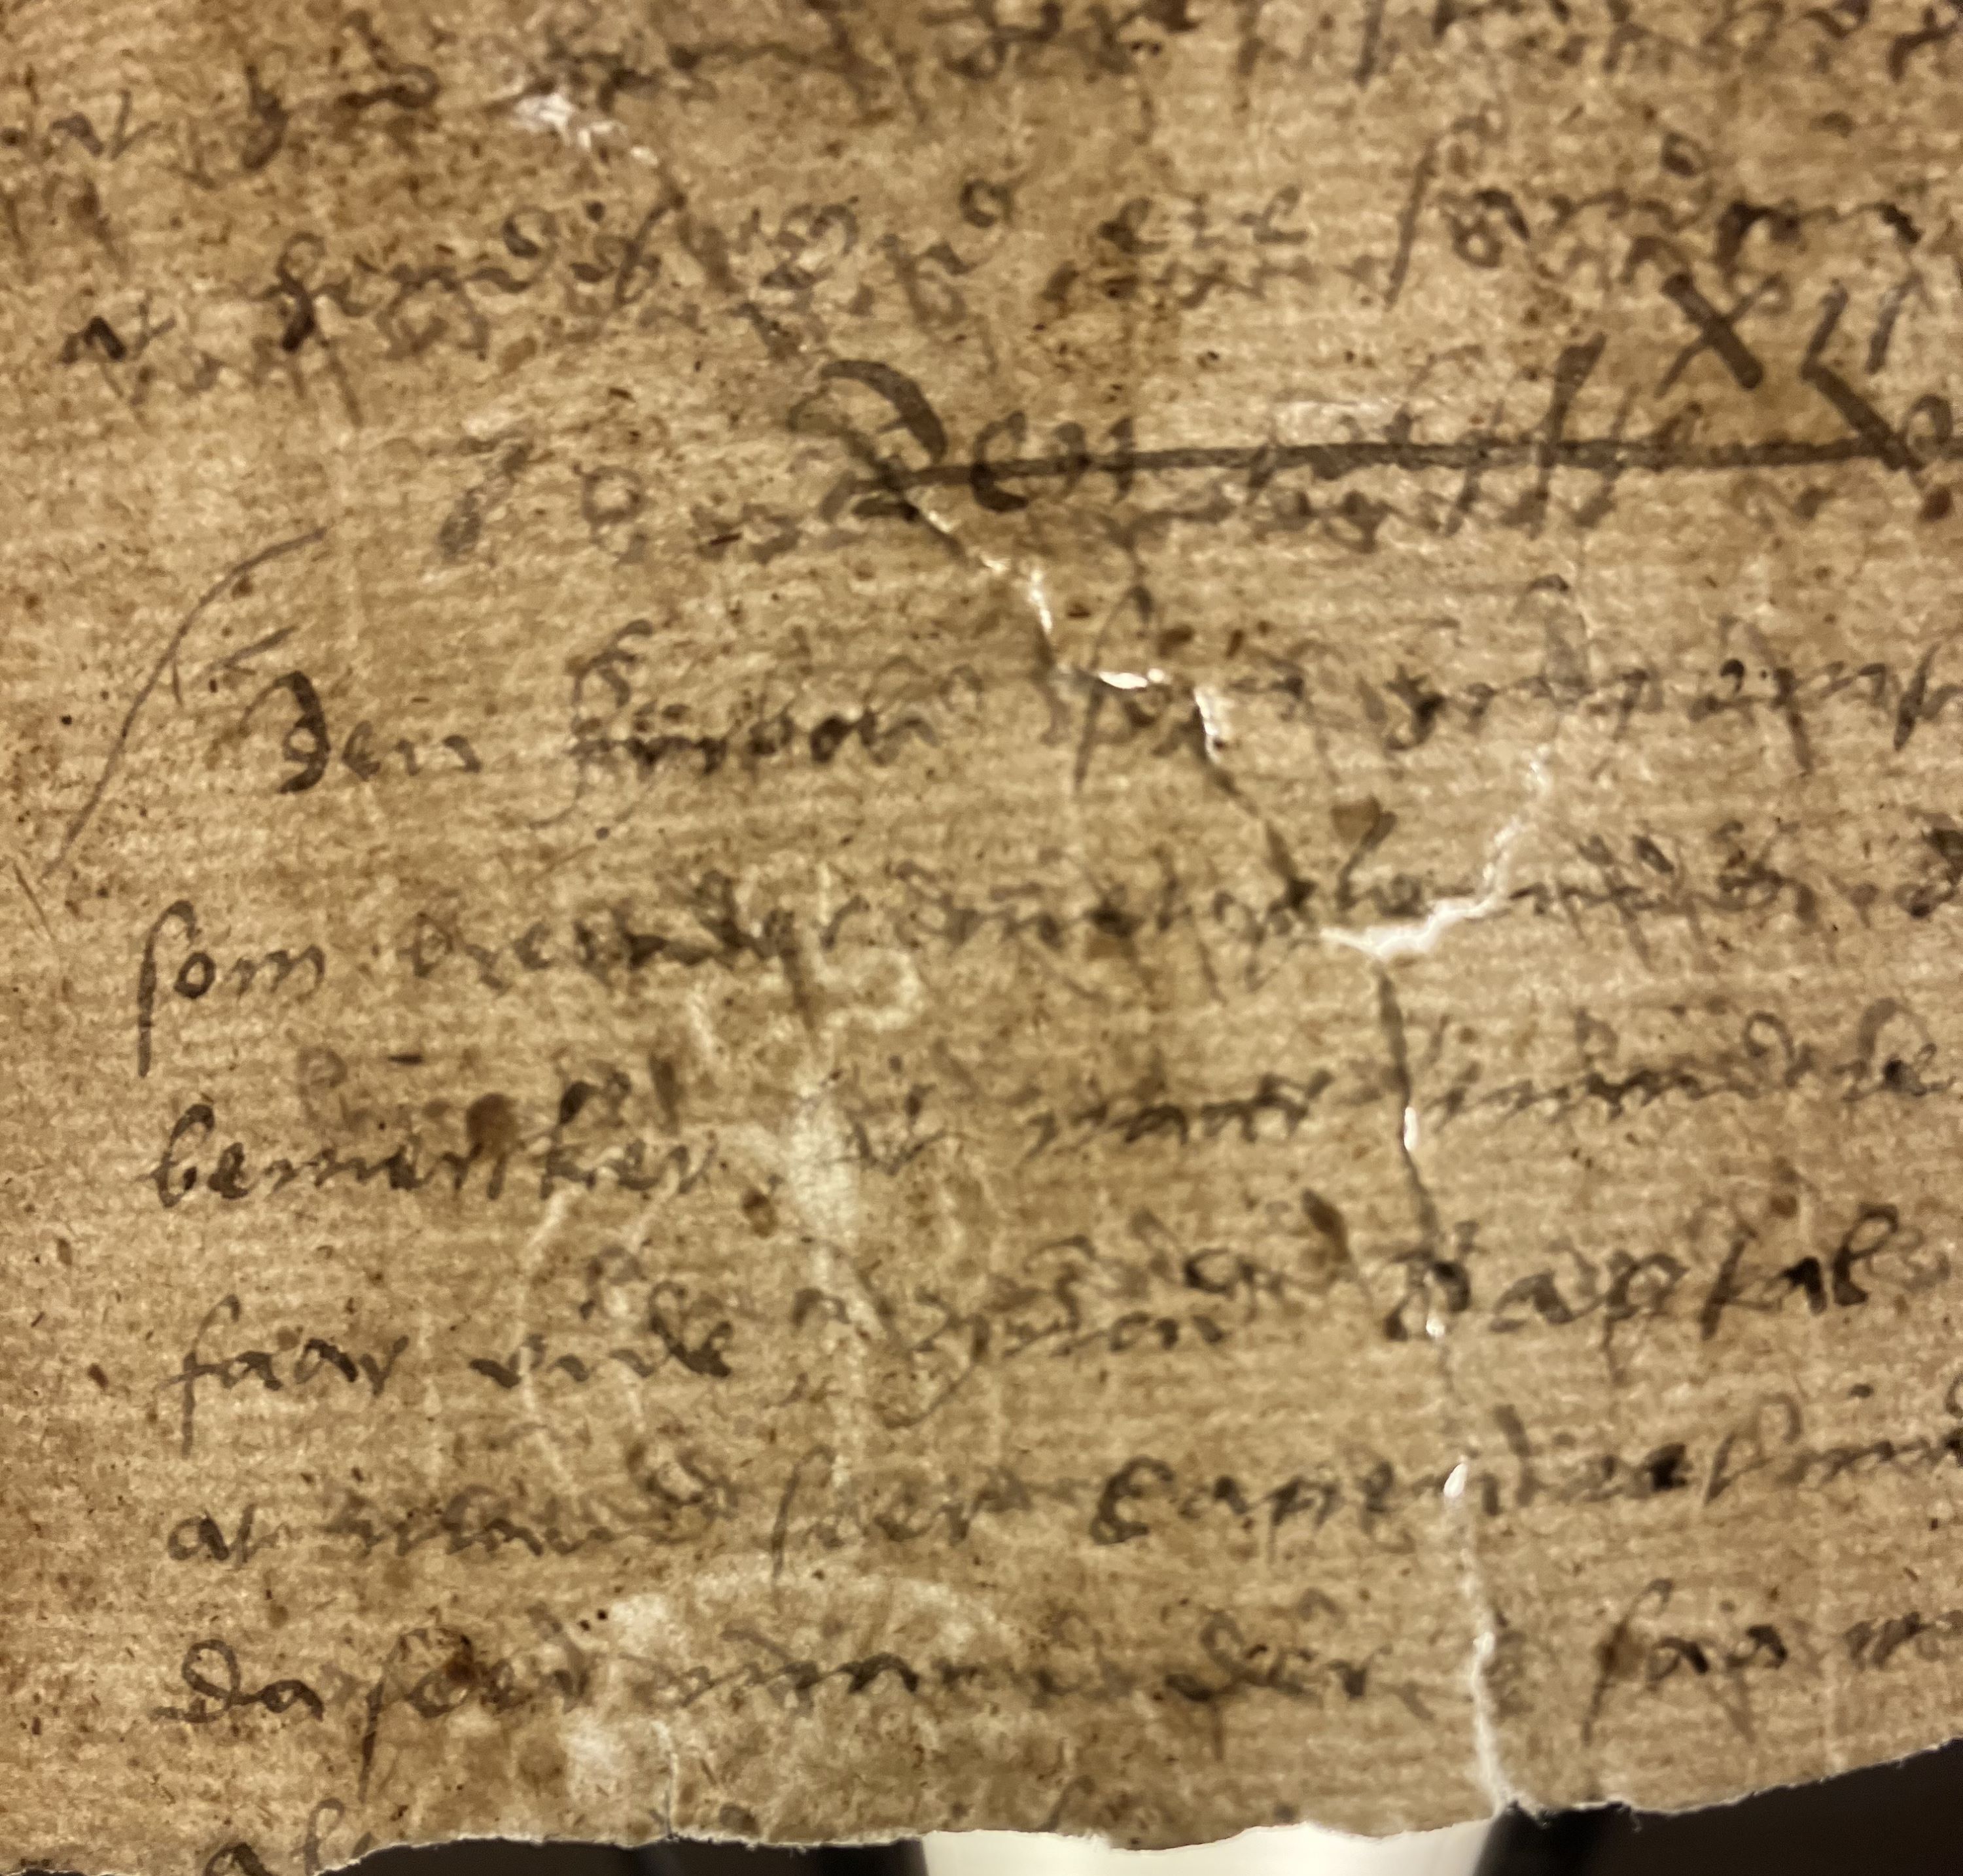 Närbild av ett gulnat och slitet pappersark där konturerna av ett vattenmärke framgår genom den handskrivna texten.